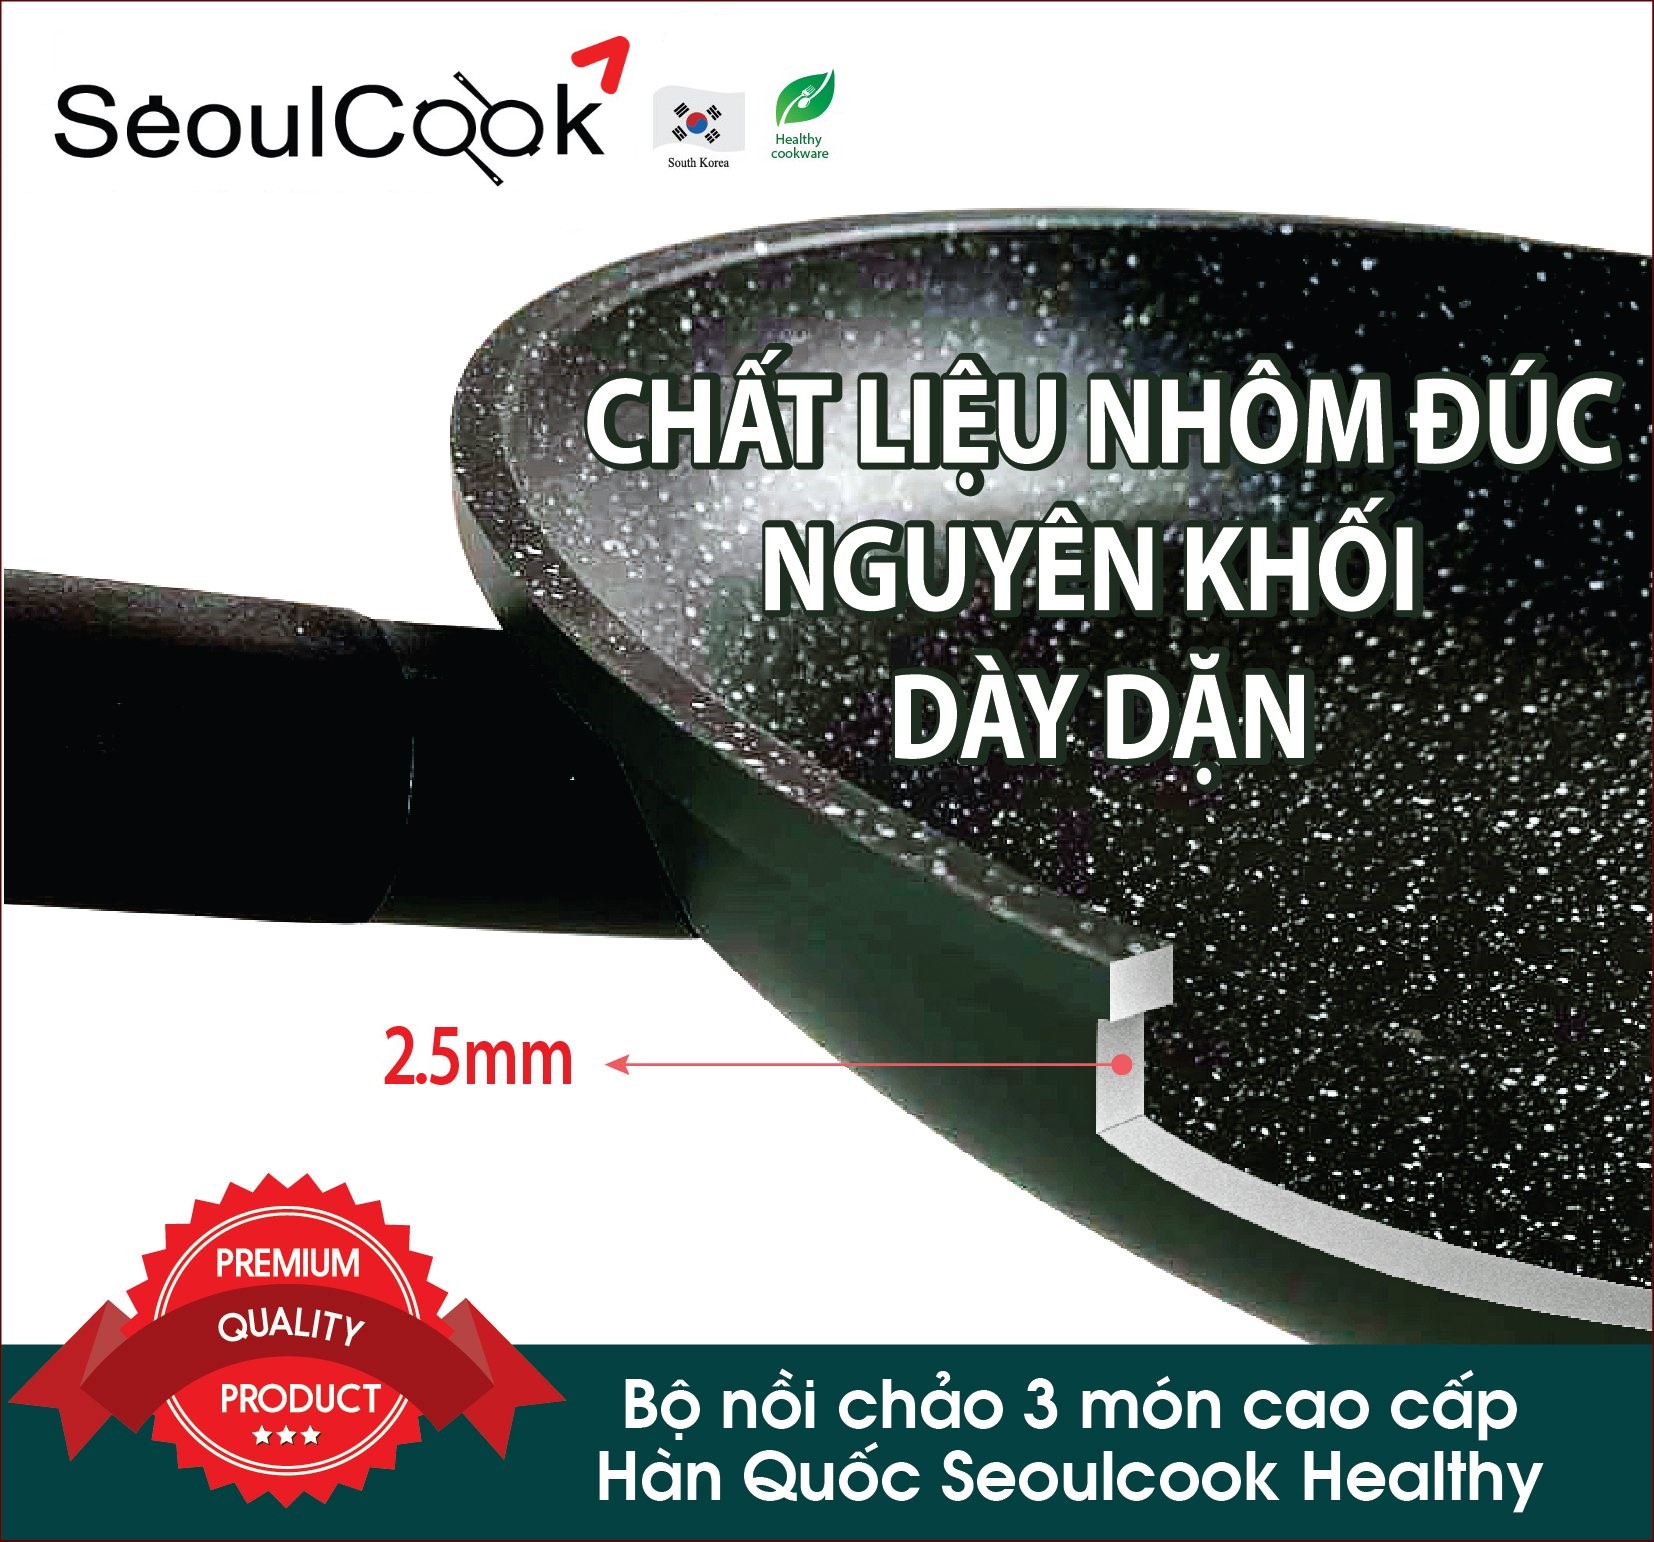 Bộ nồi chảo đáy từ 3 món cao cấp Hàn Quốc Seoulcook Healthy, thiết kế hiện đại, dùng được tất cả các bếp/Induction - Hàng chính hãng